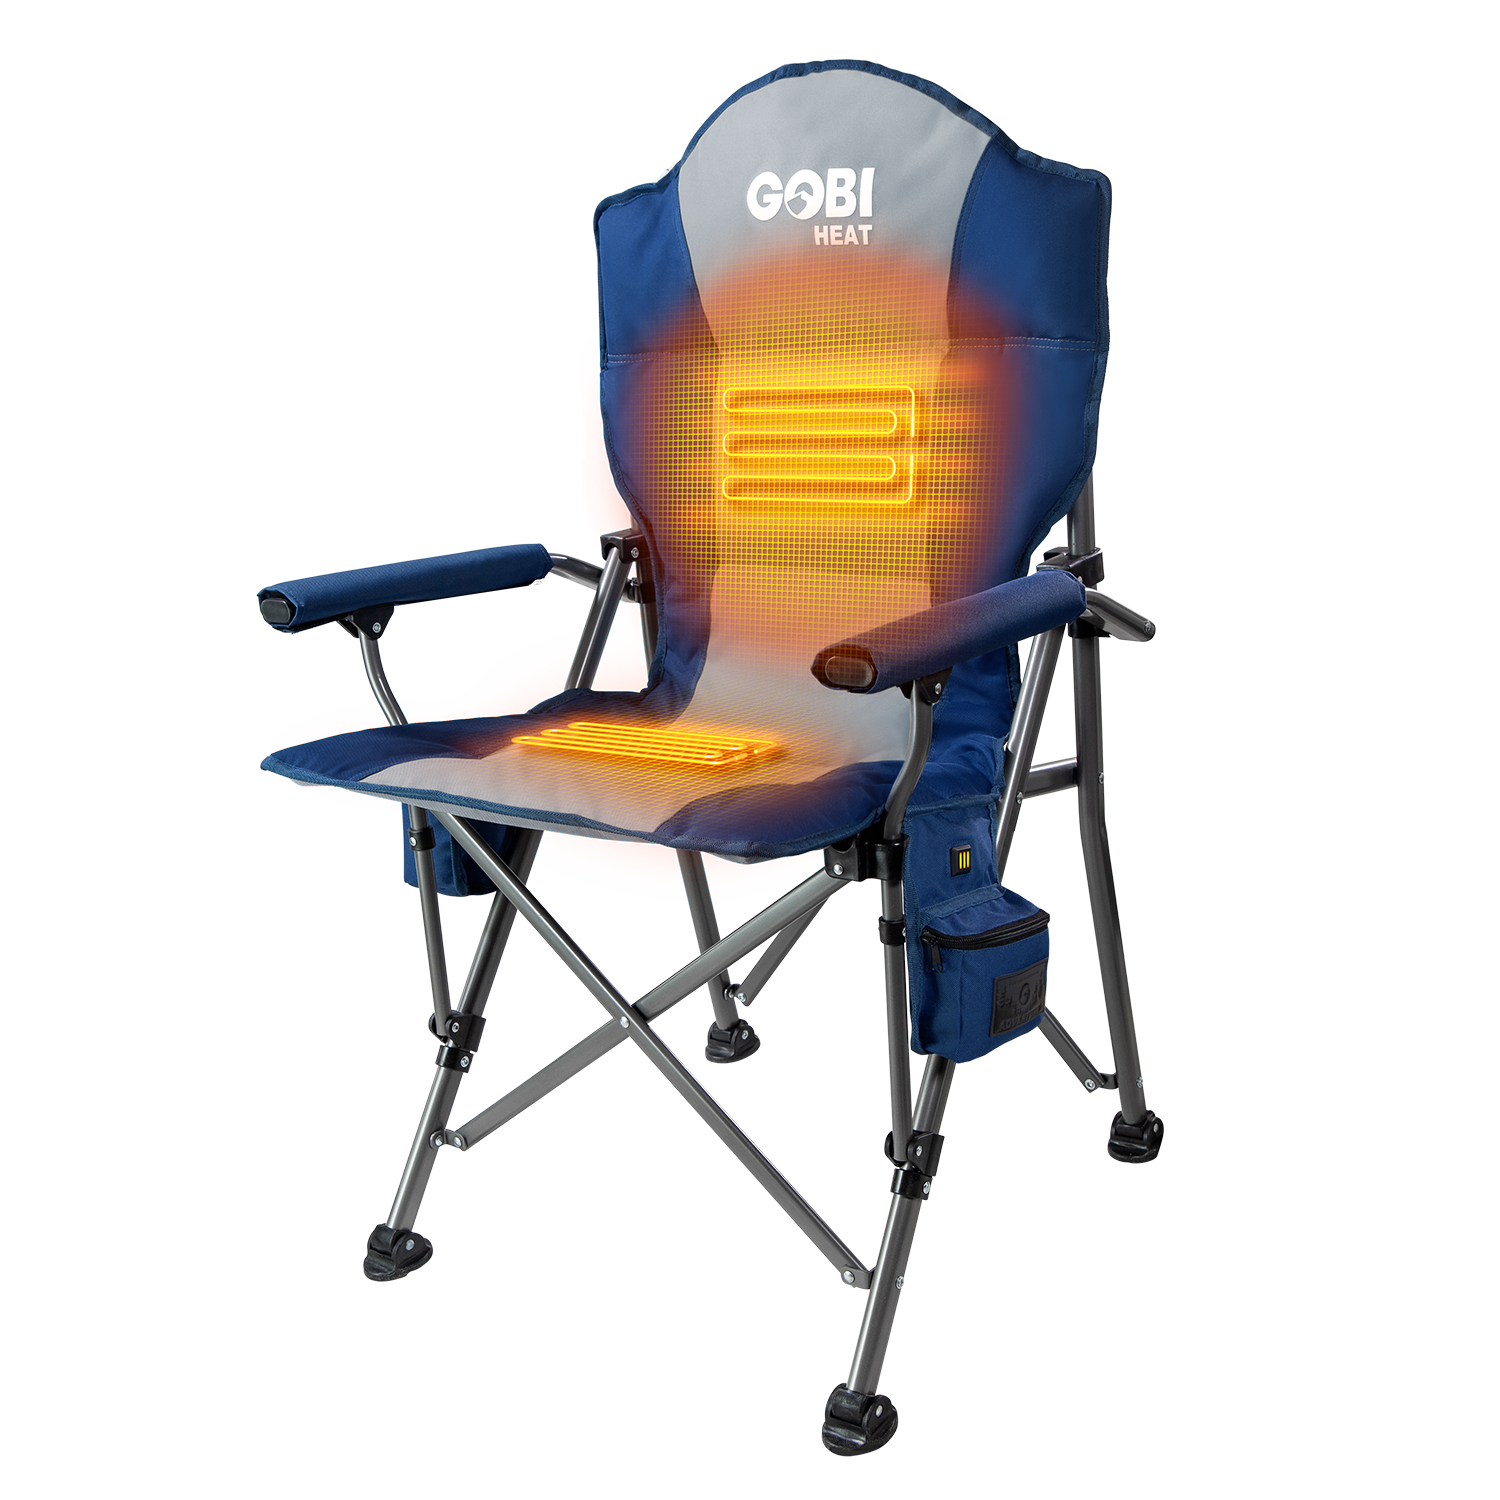 Terrain Heated Camping Chair Midnight-Blue